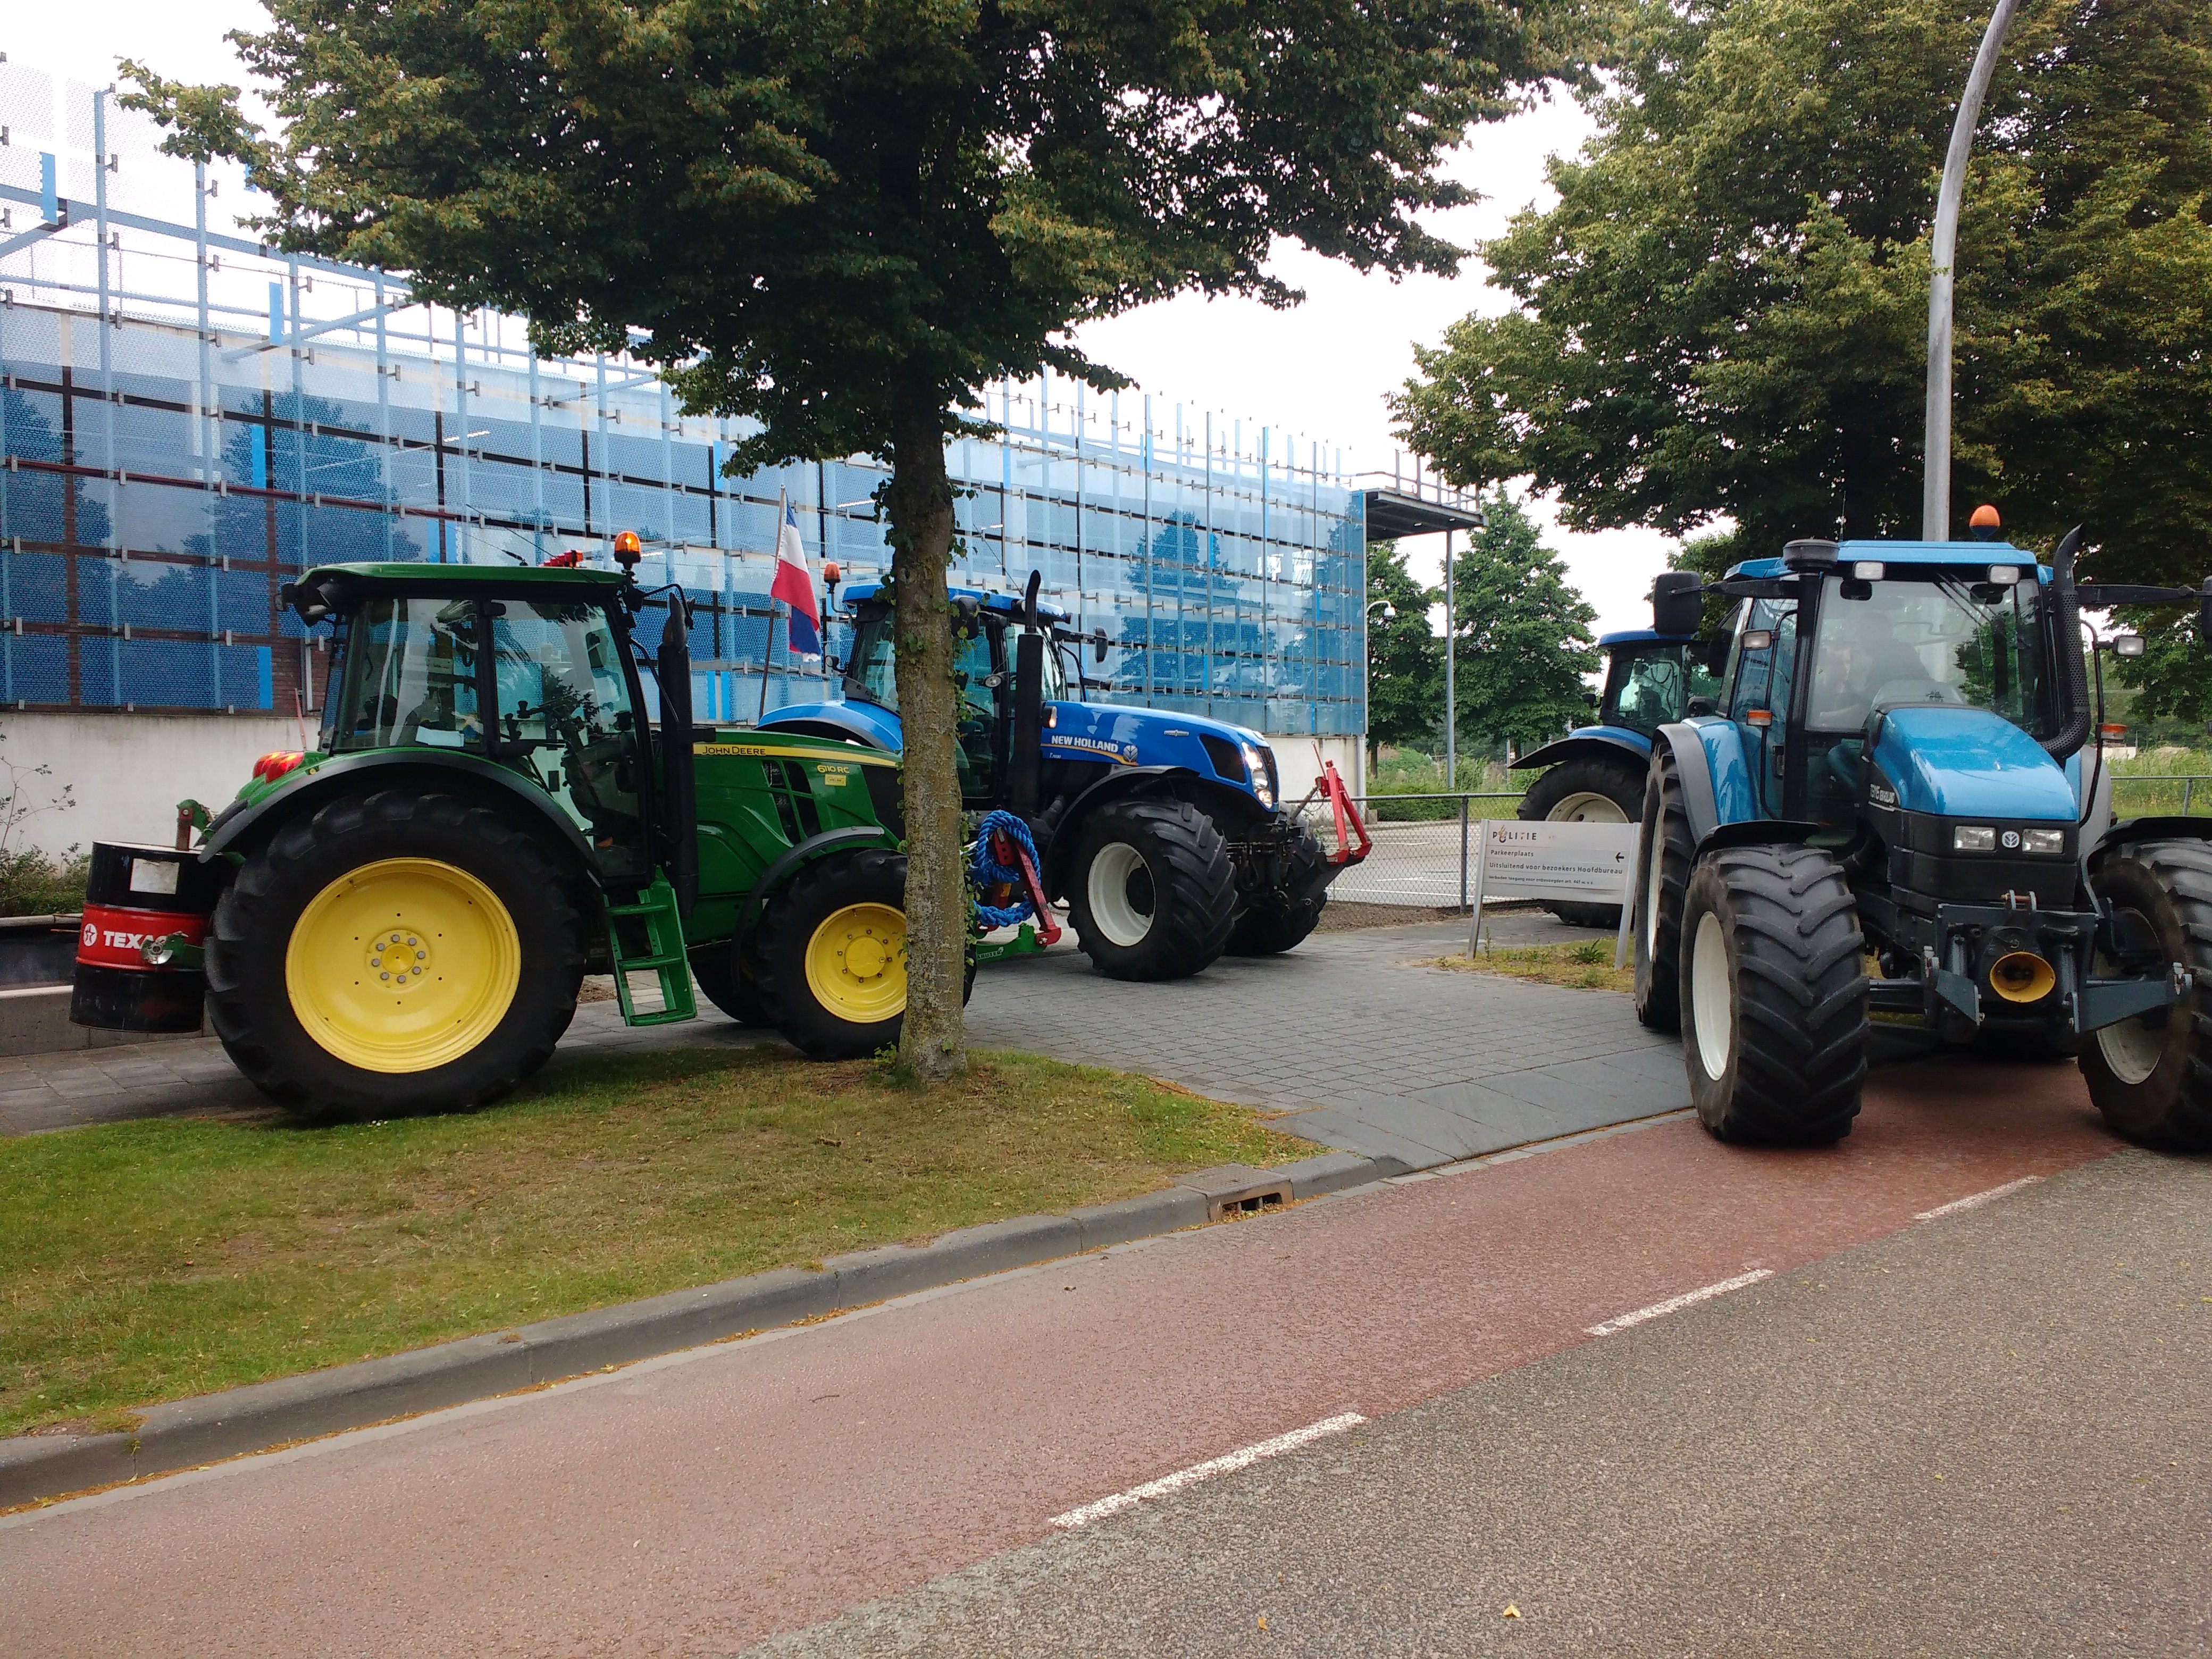 Afgelopen zaterdag, 4 juli, stonden deze tractoren nog bij de parkeerplaats van de politie in Zwolle.